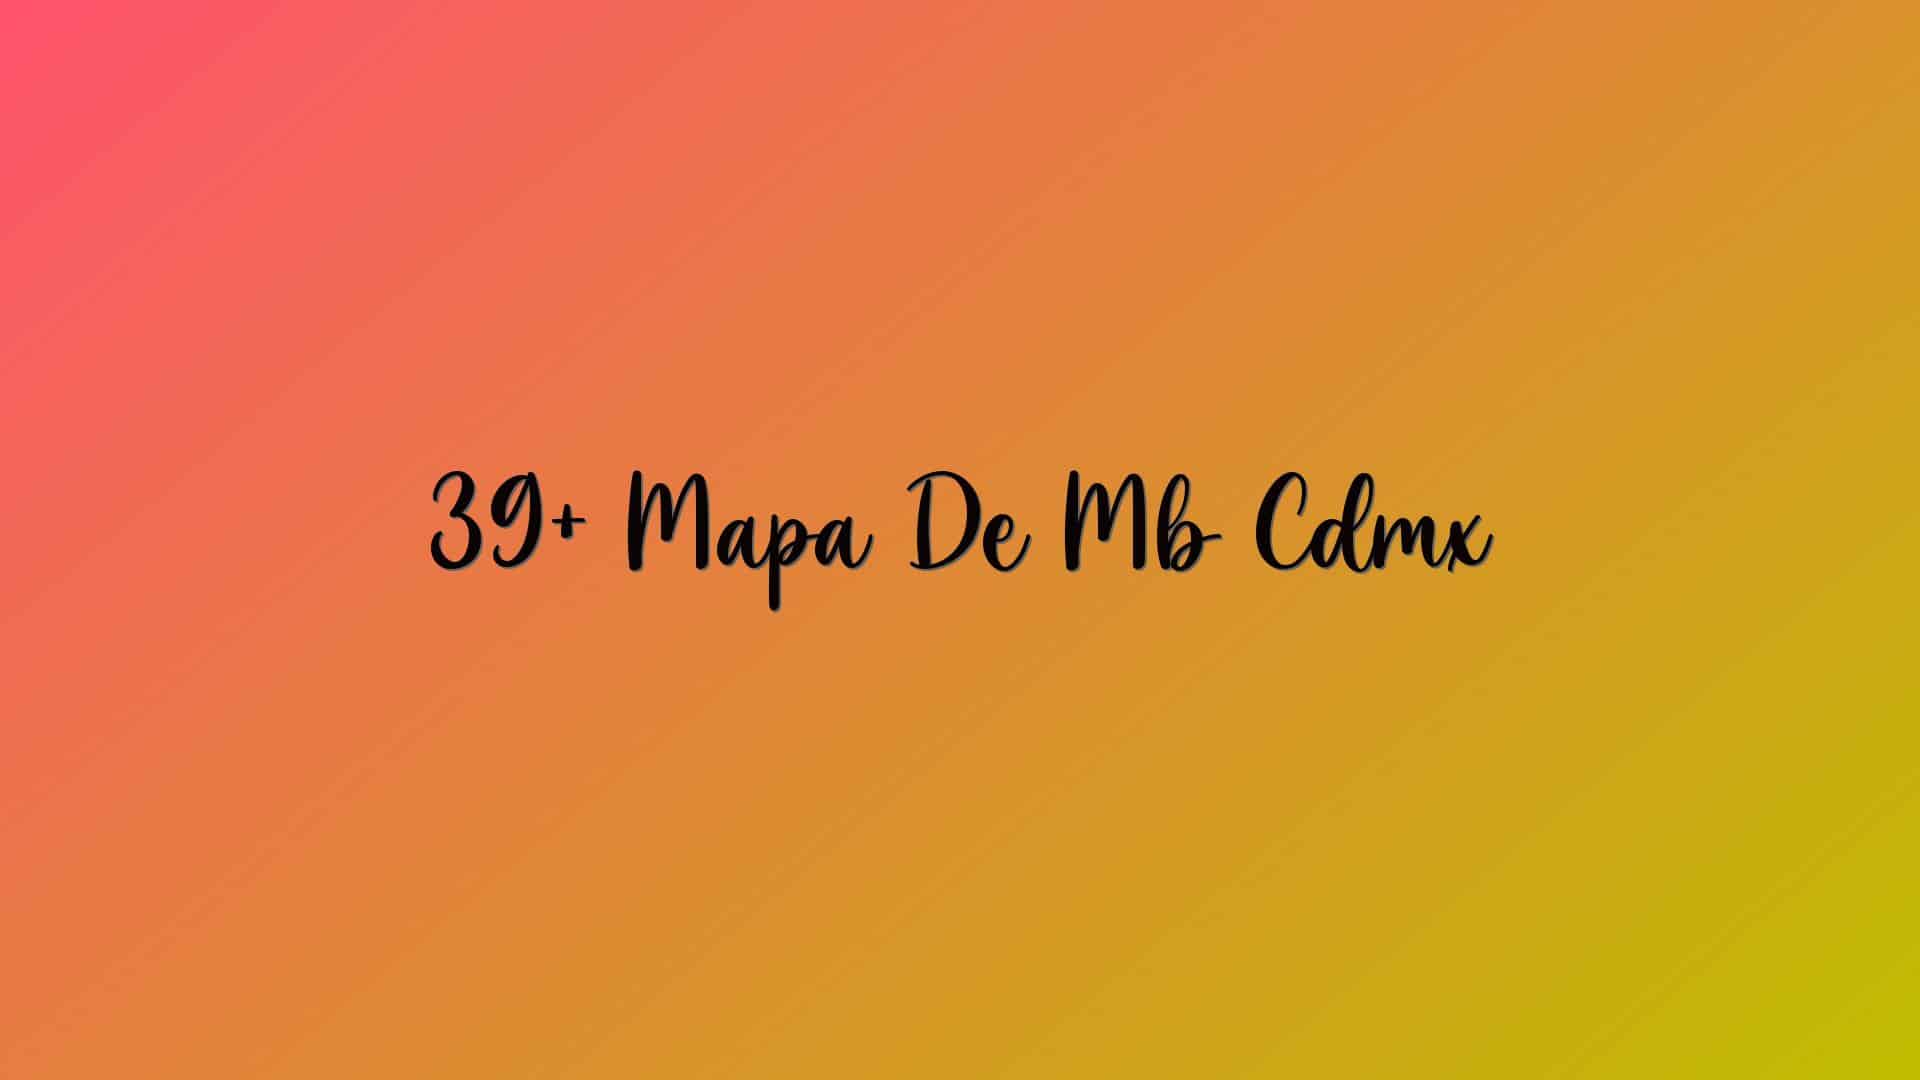 39+ Mapa De Mb Cdmx